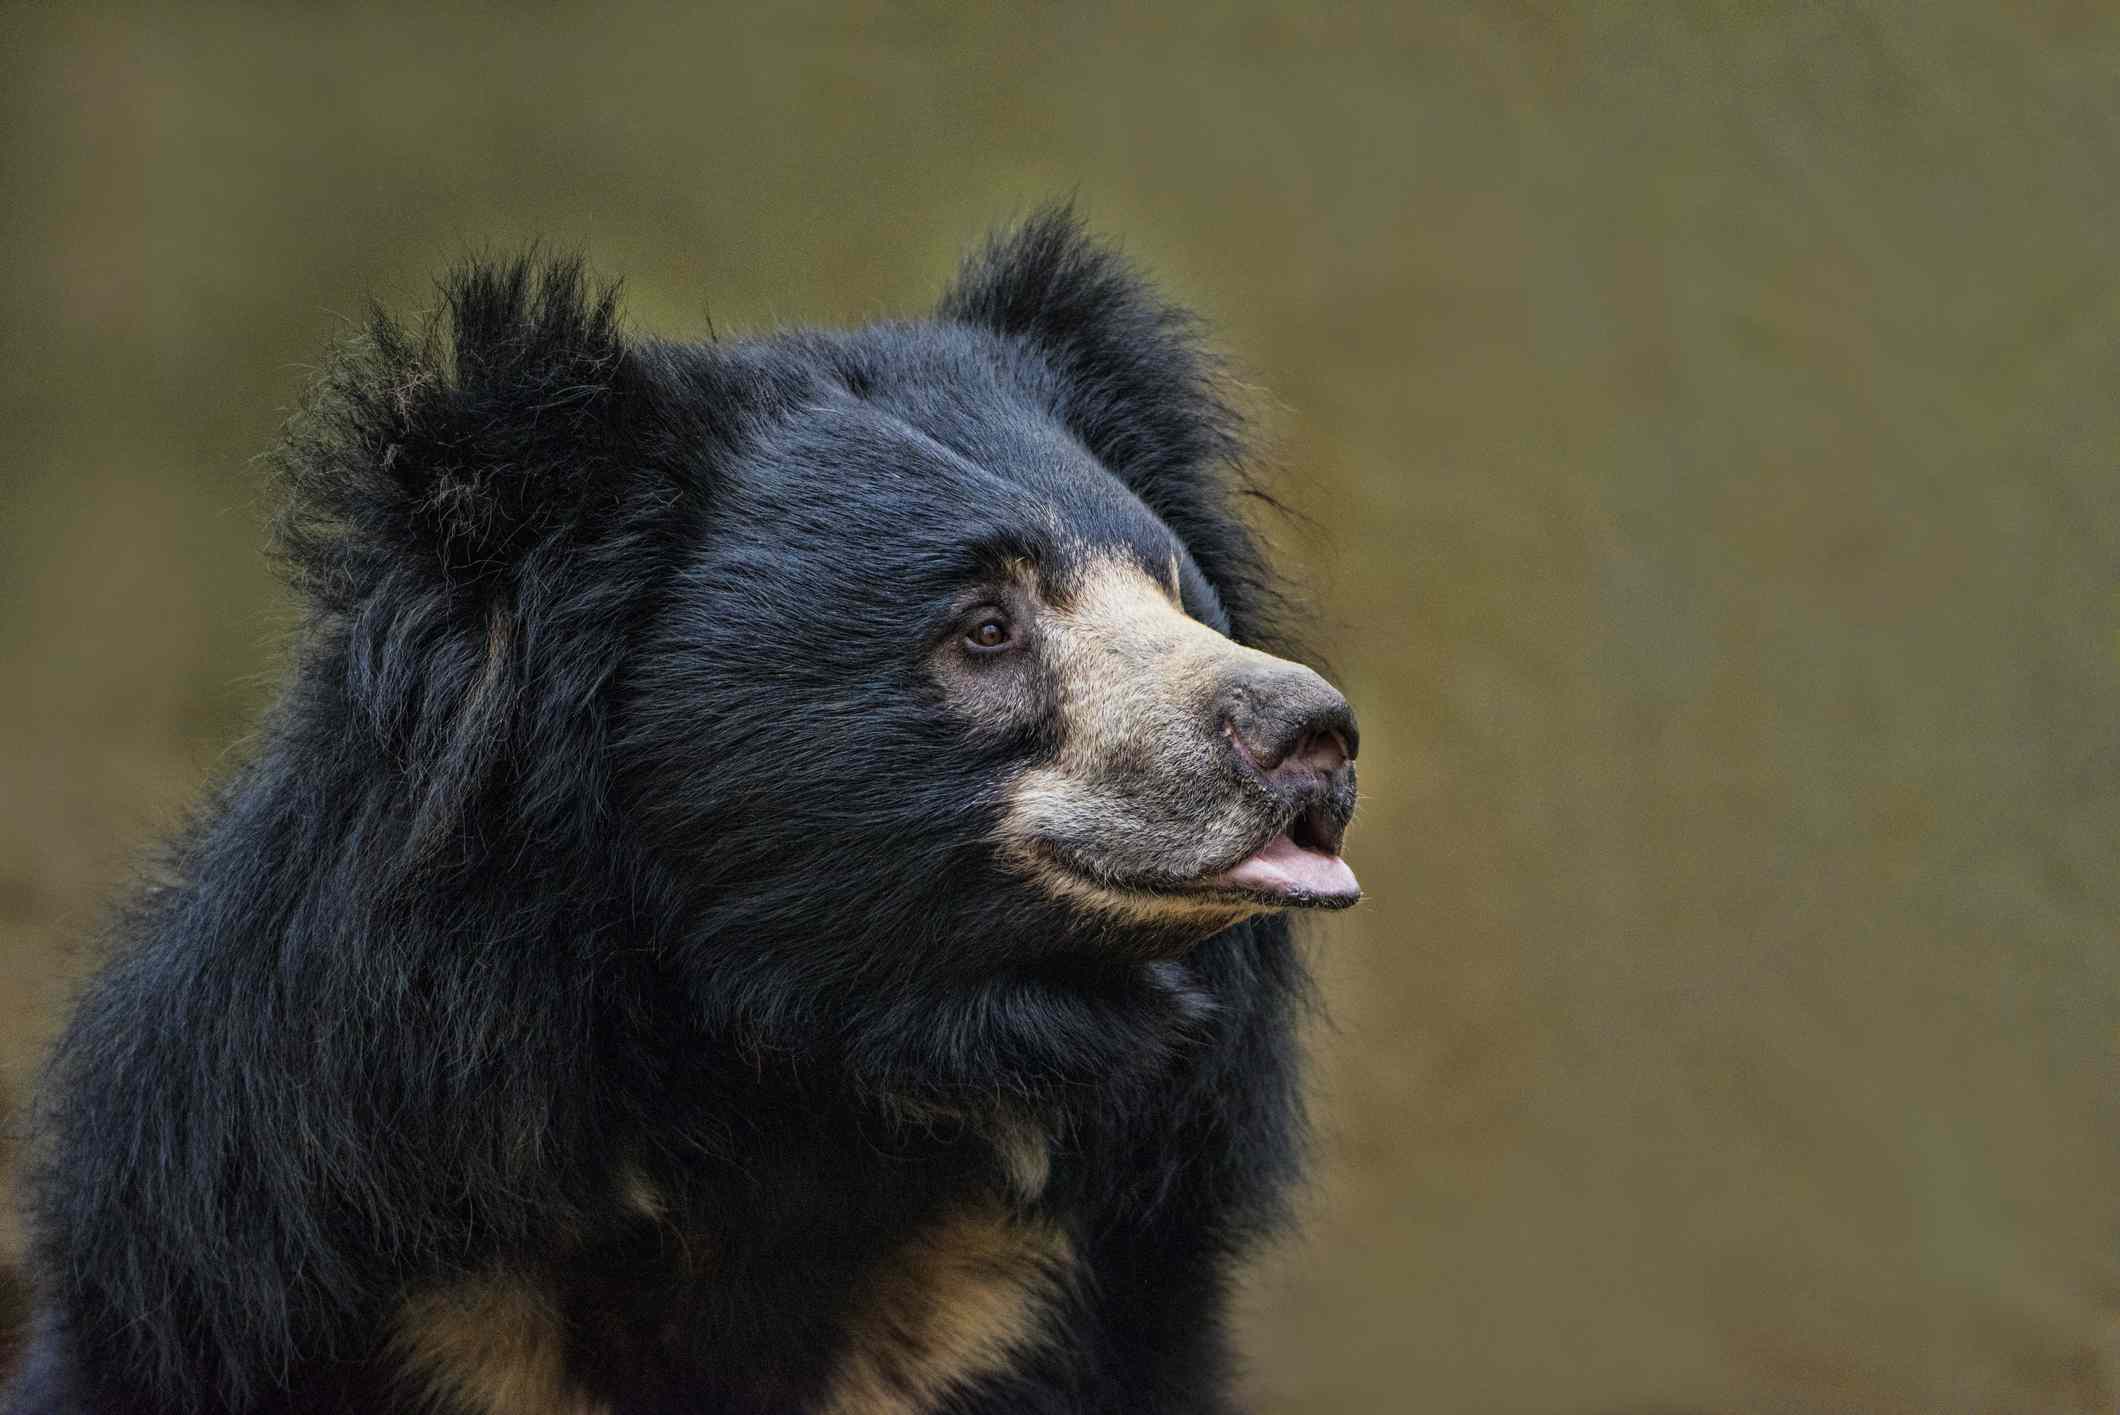 perfil de un oso perezoso negro con marcas de color canela y el labio inferior sobresaliendo